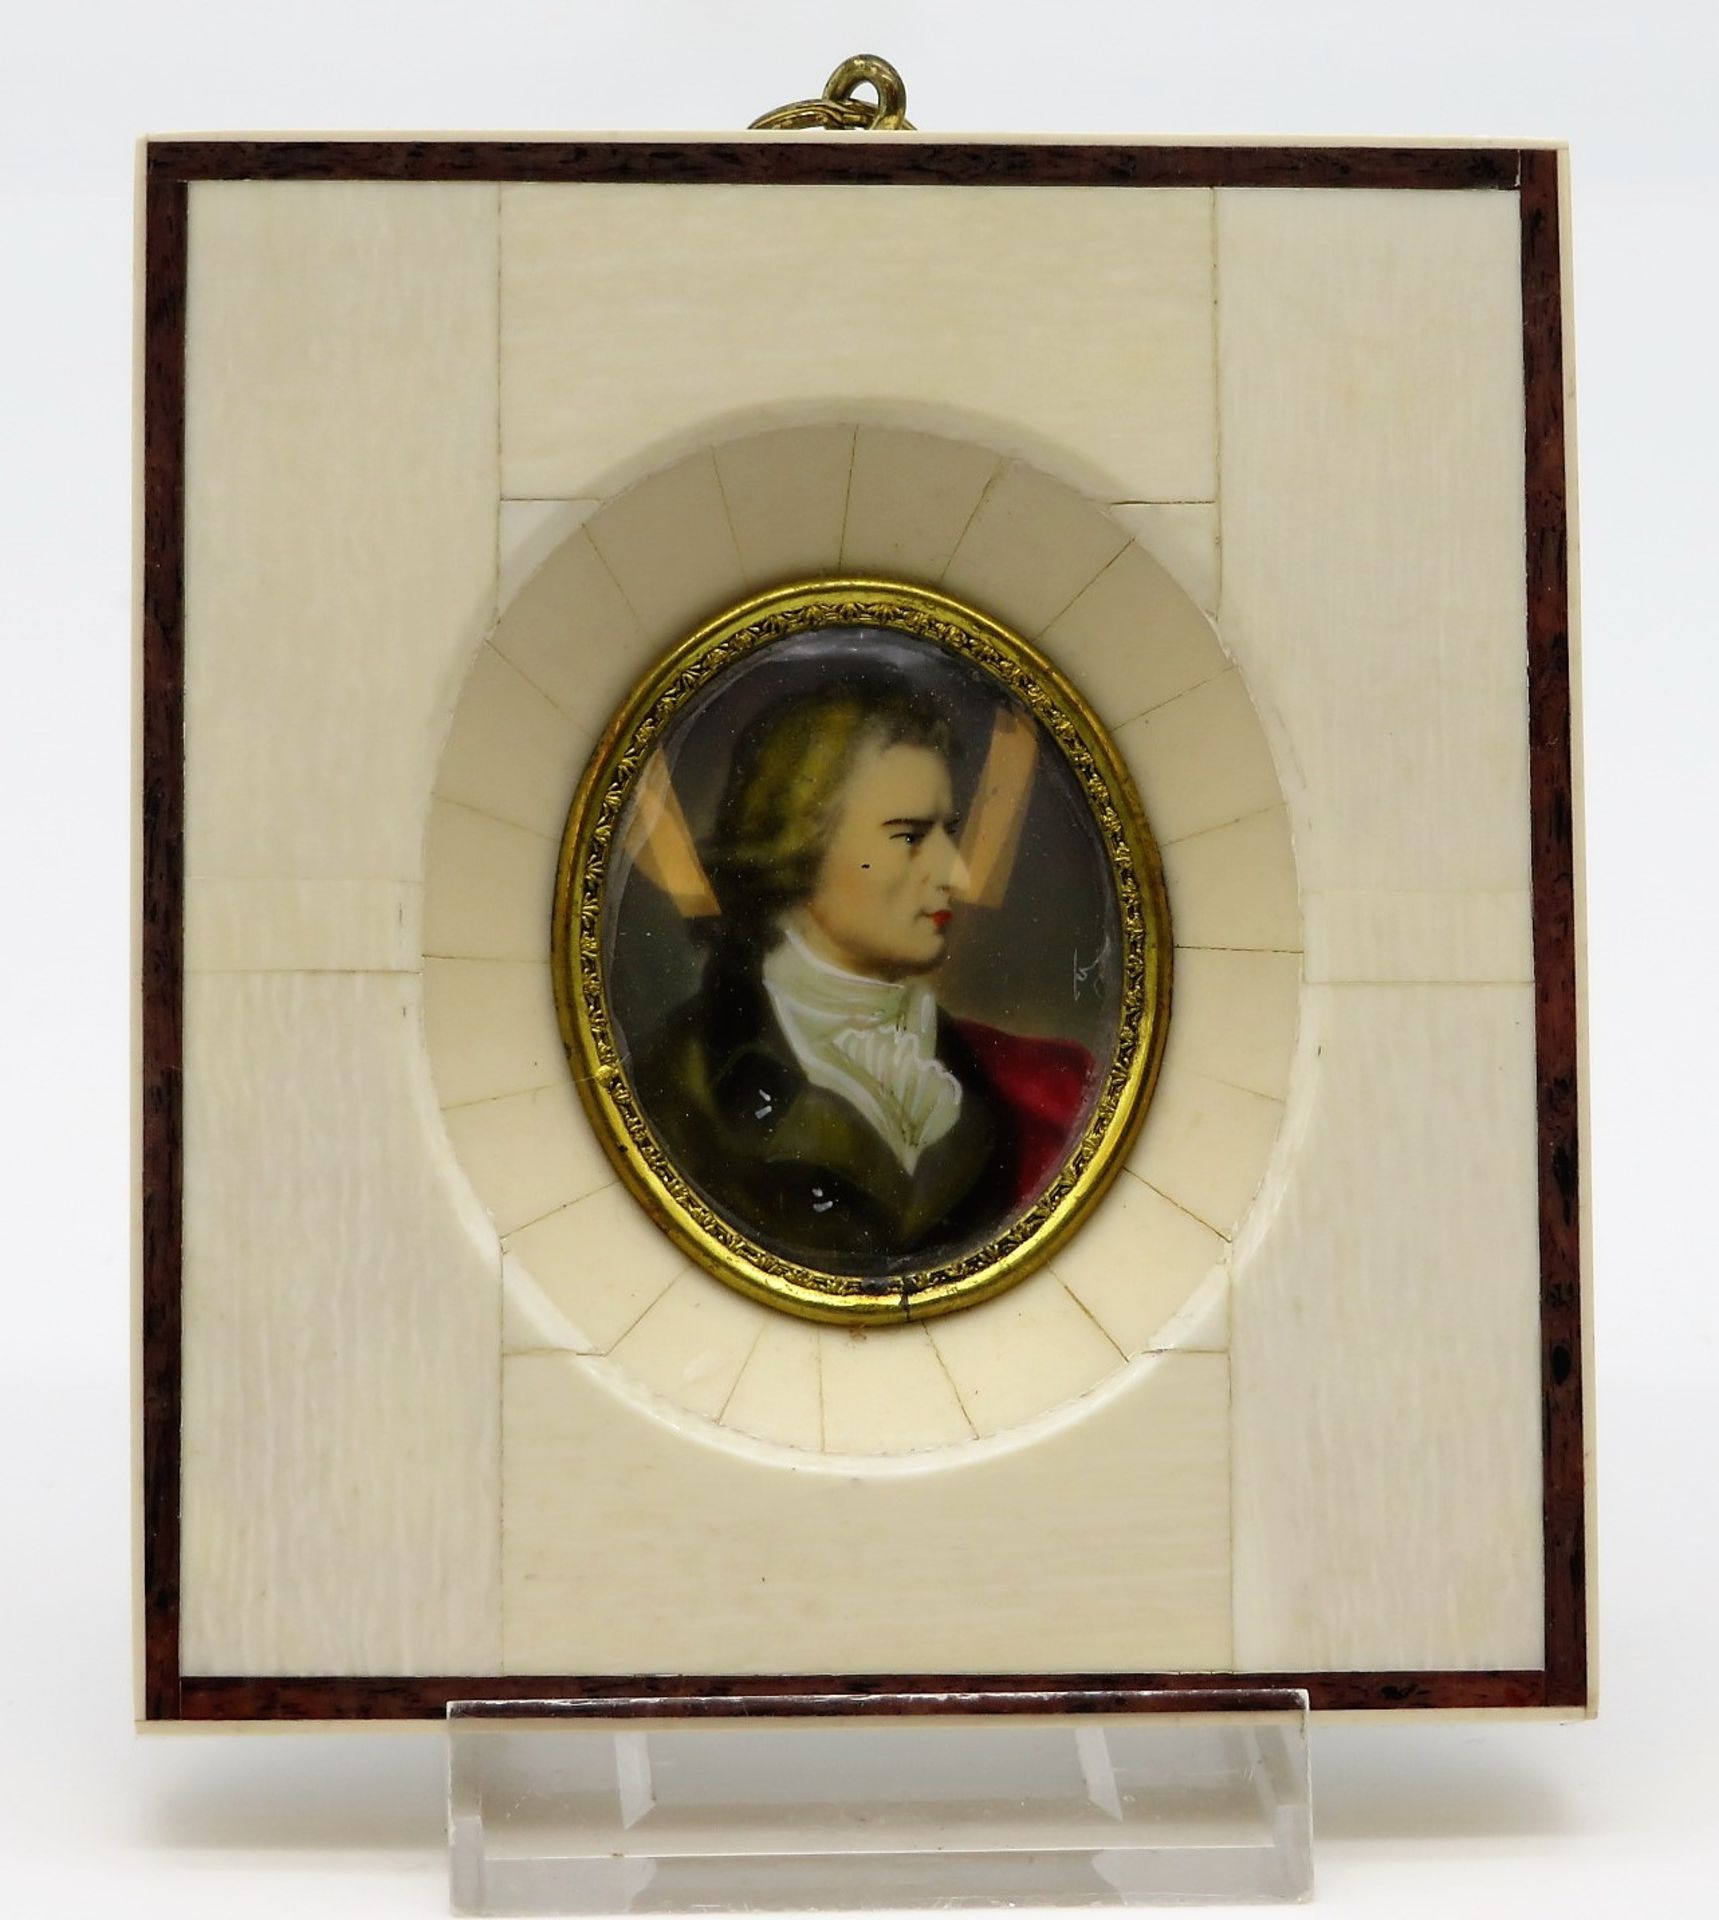 Miniatur, "Friedrich Schiller", unles.sign., 11,5 x 10 cm.